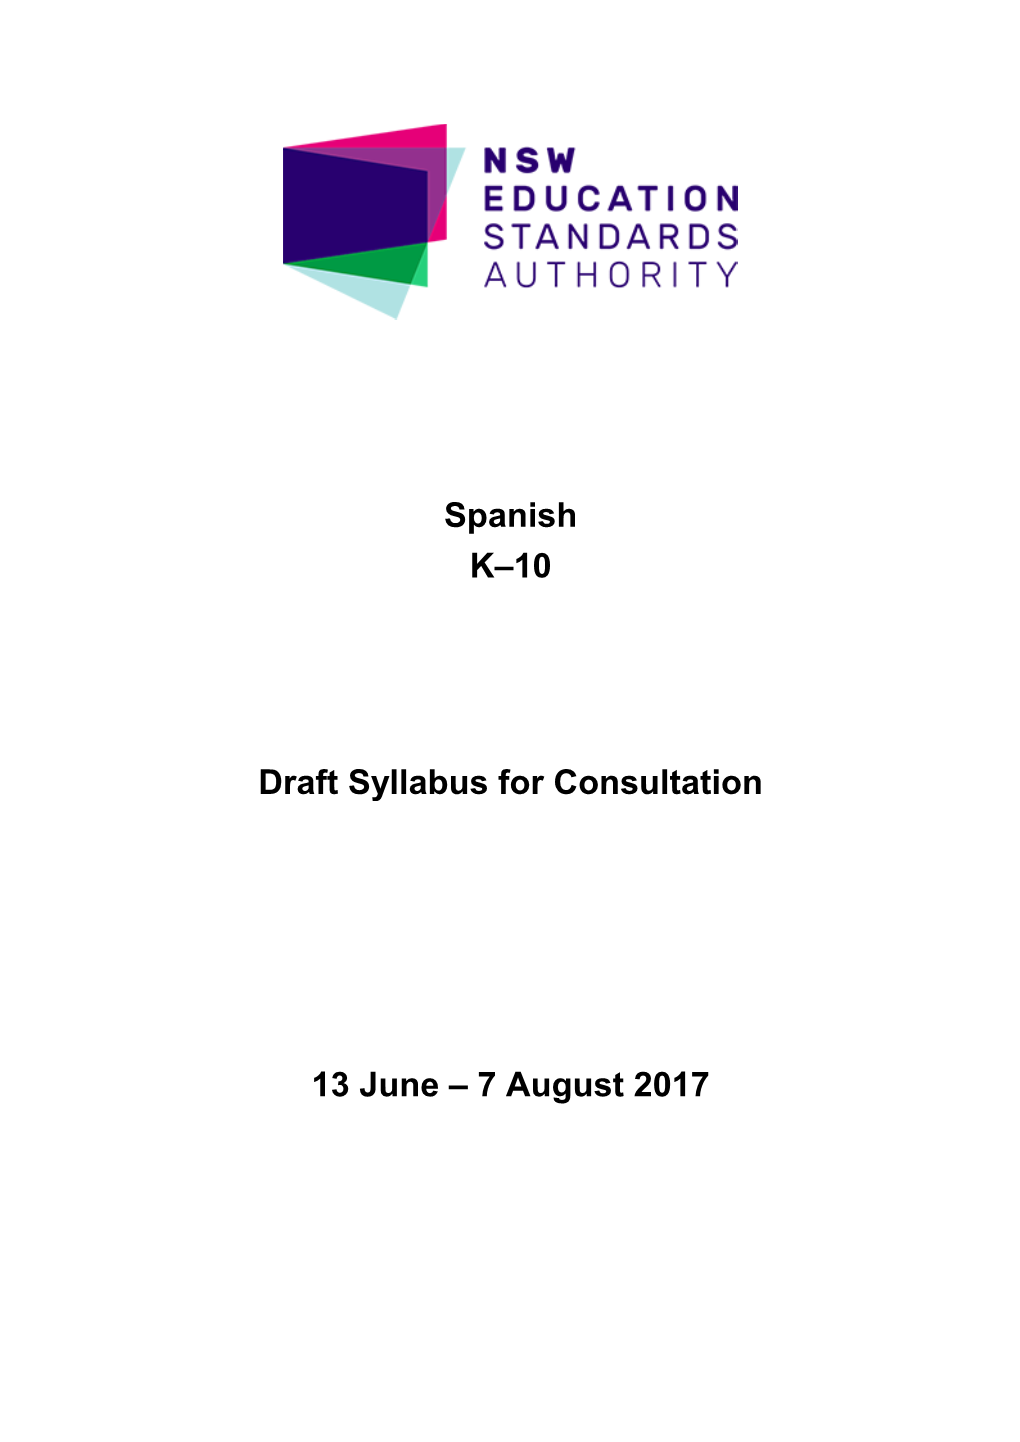 Spanish K-10 Draft Syllabus for Consultation 2017